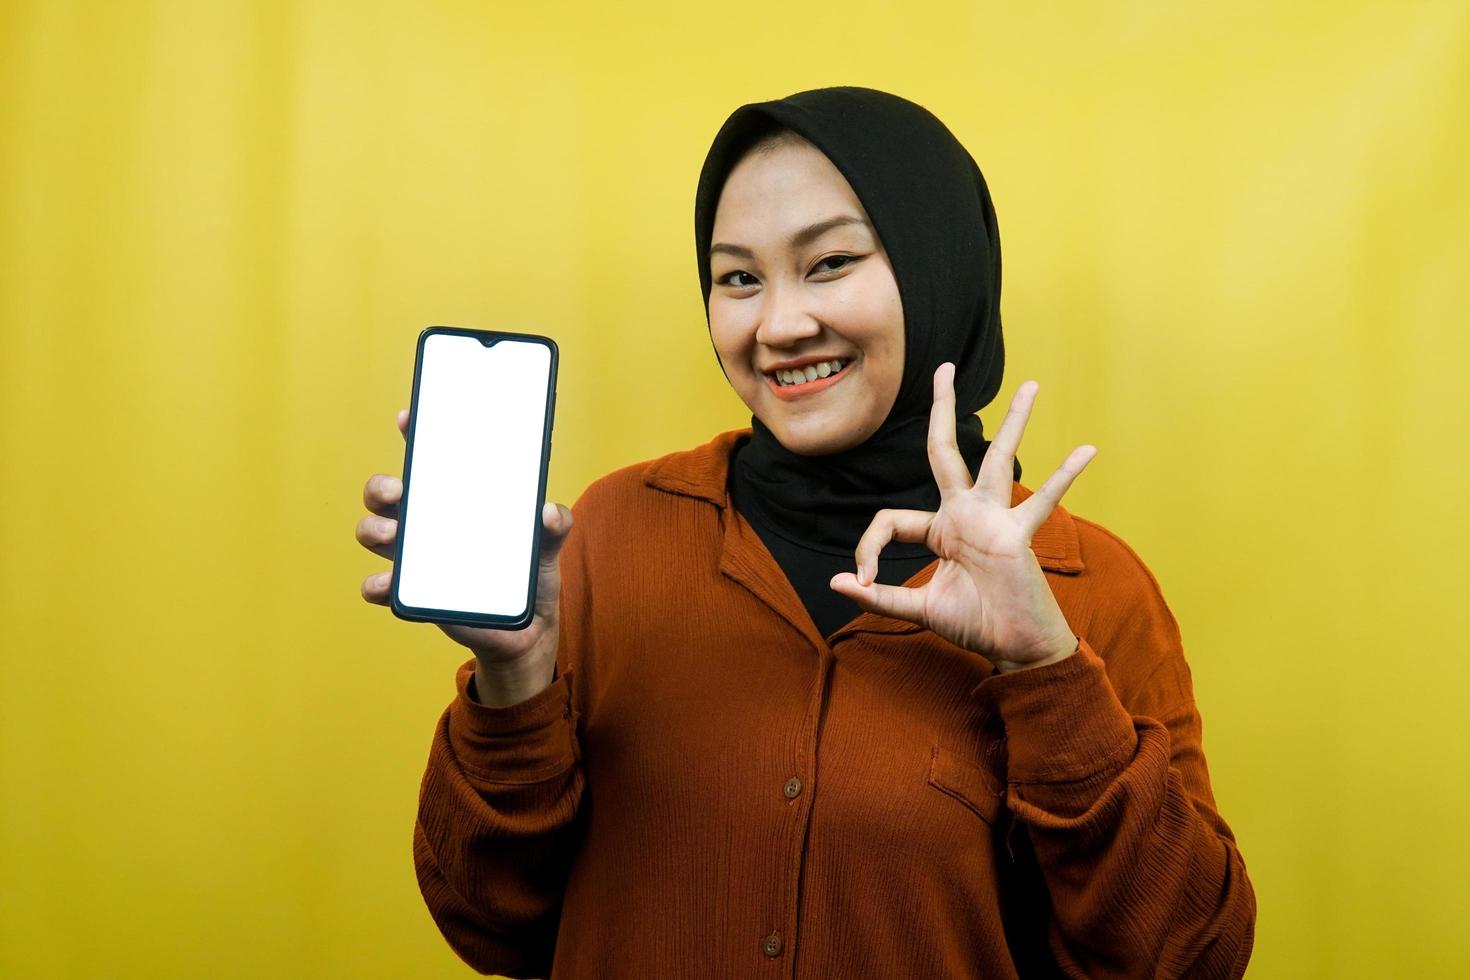 vacker ung asiatisk muslimsk kvinna som håller smartphone med vit eller tom skärm, marknadsför app, främjar något, isolerad, reklamkoncept foto